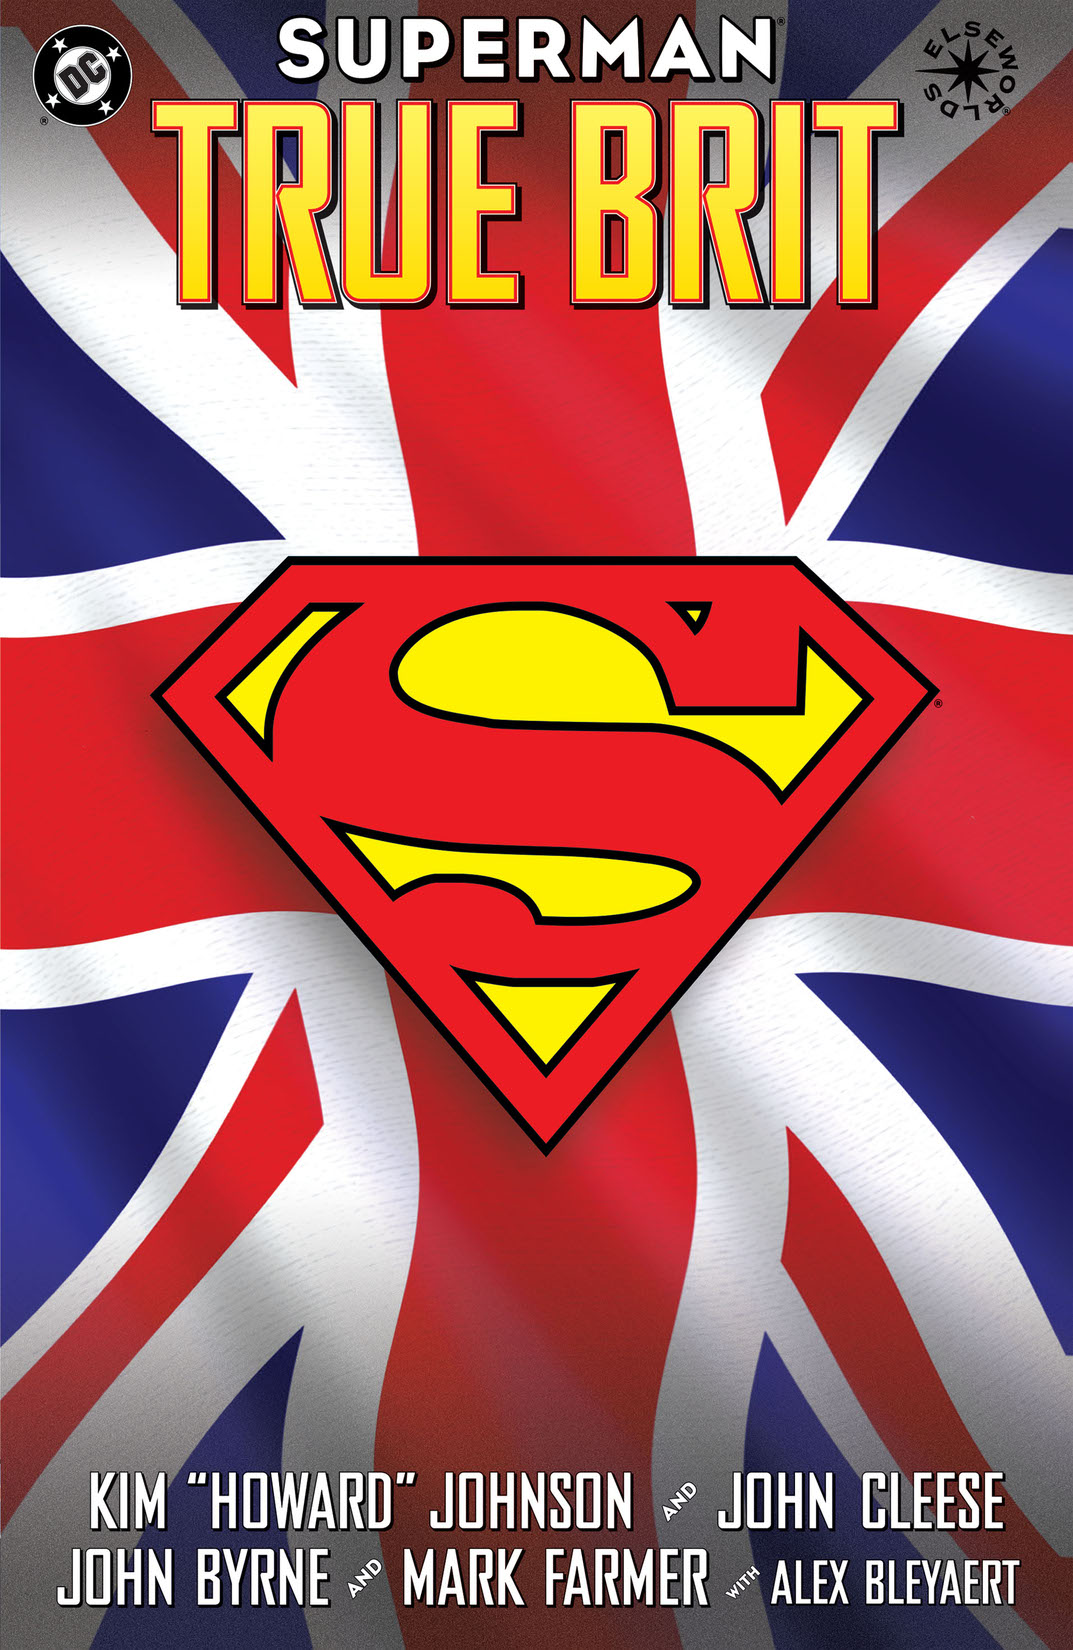 Superman: True Brit #1 preview images